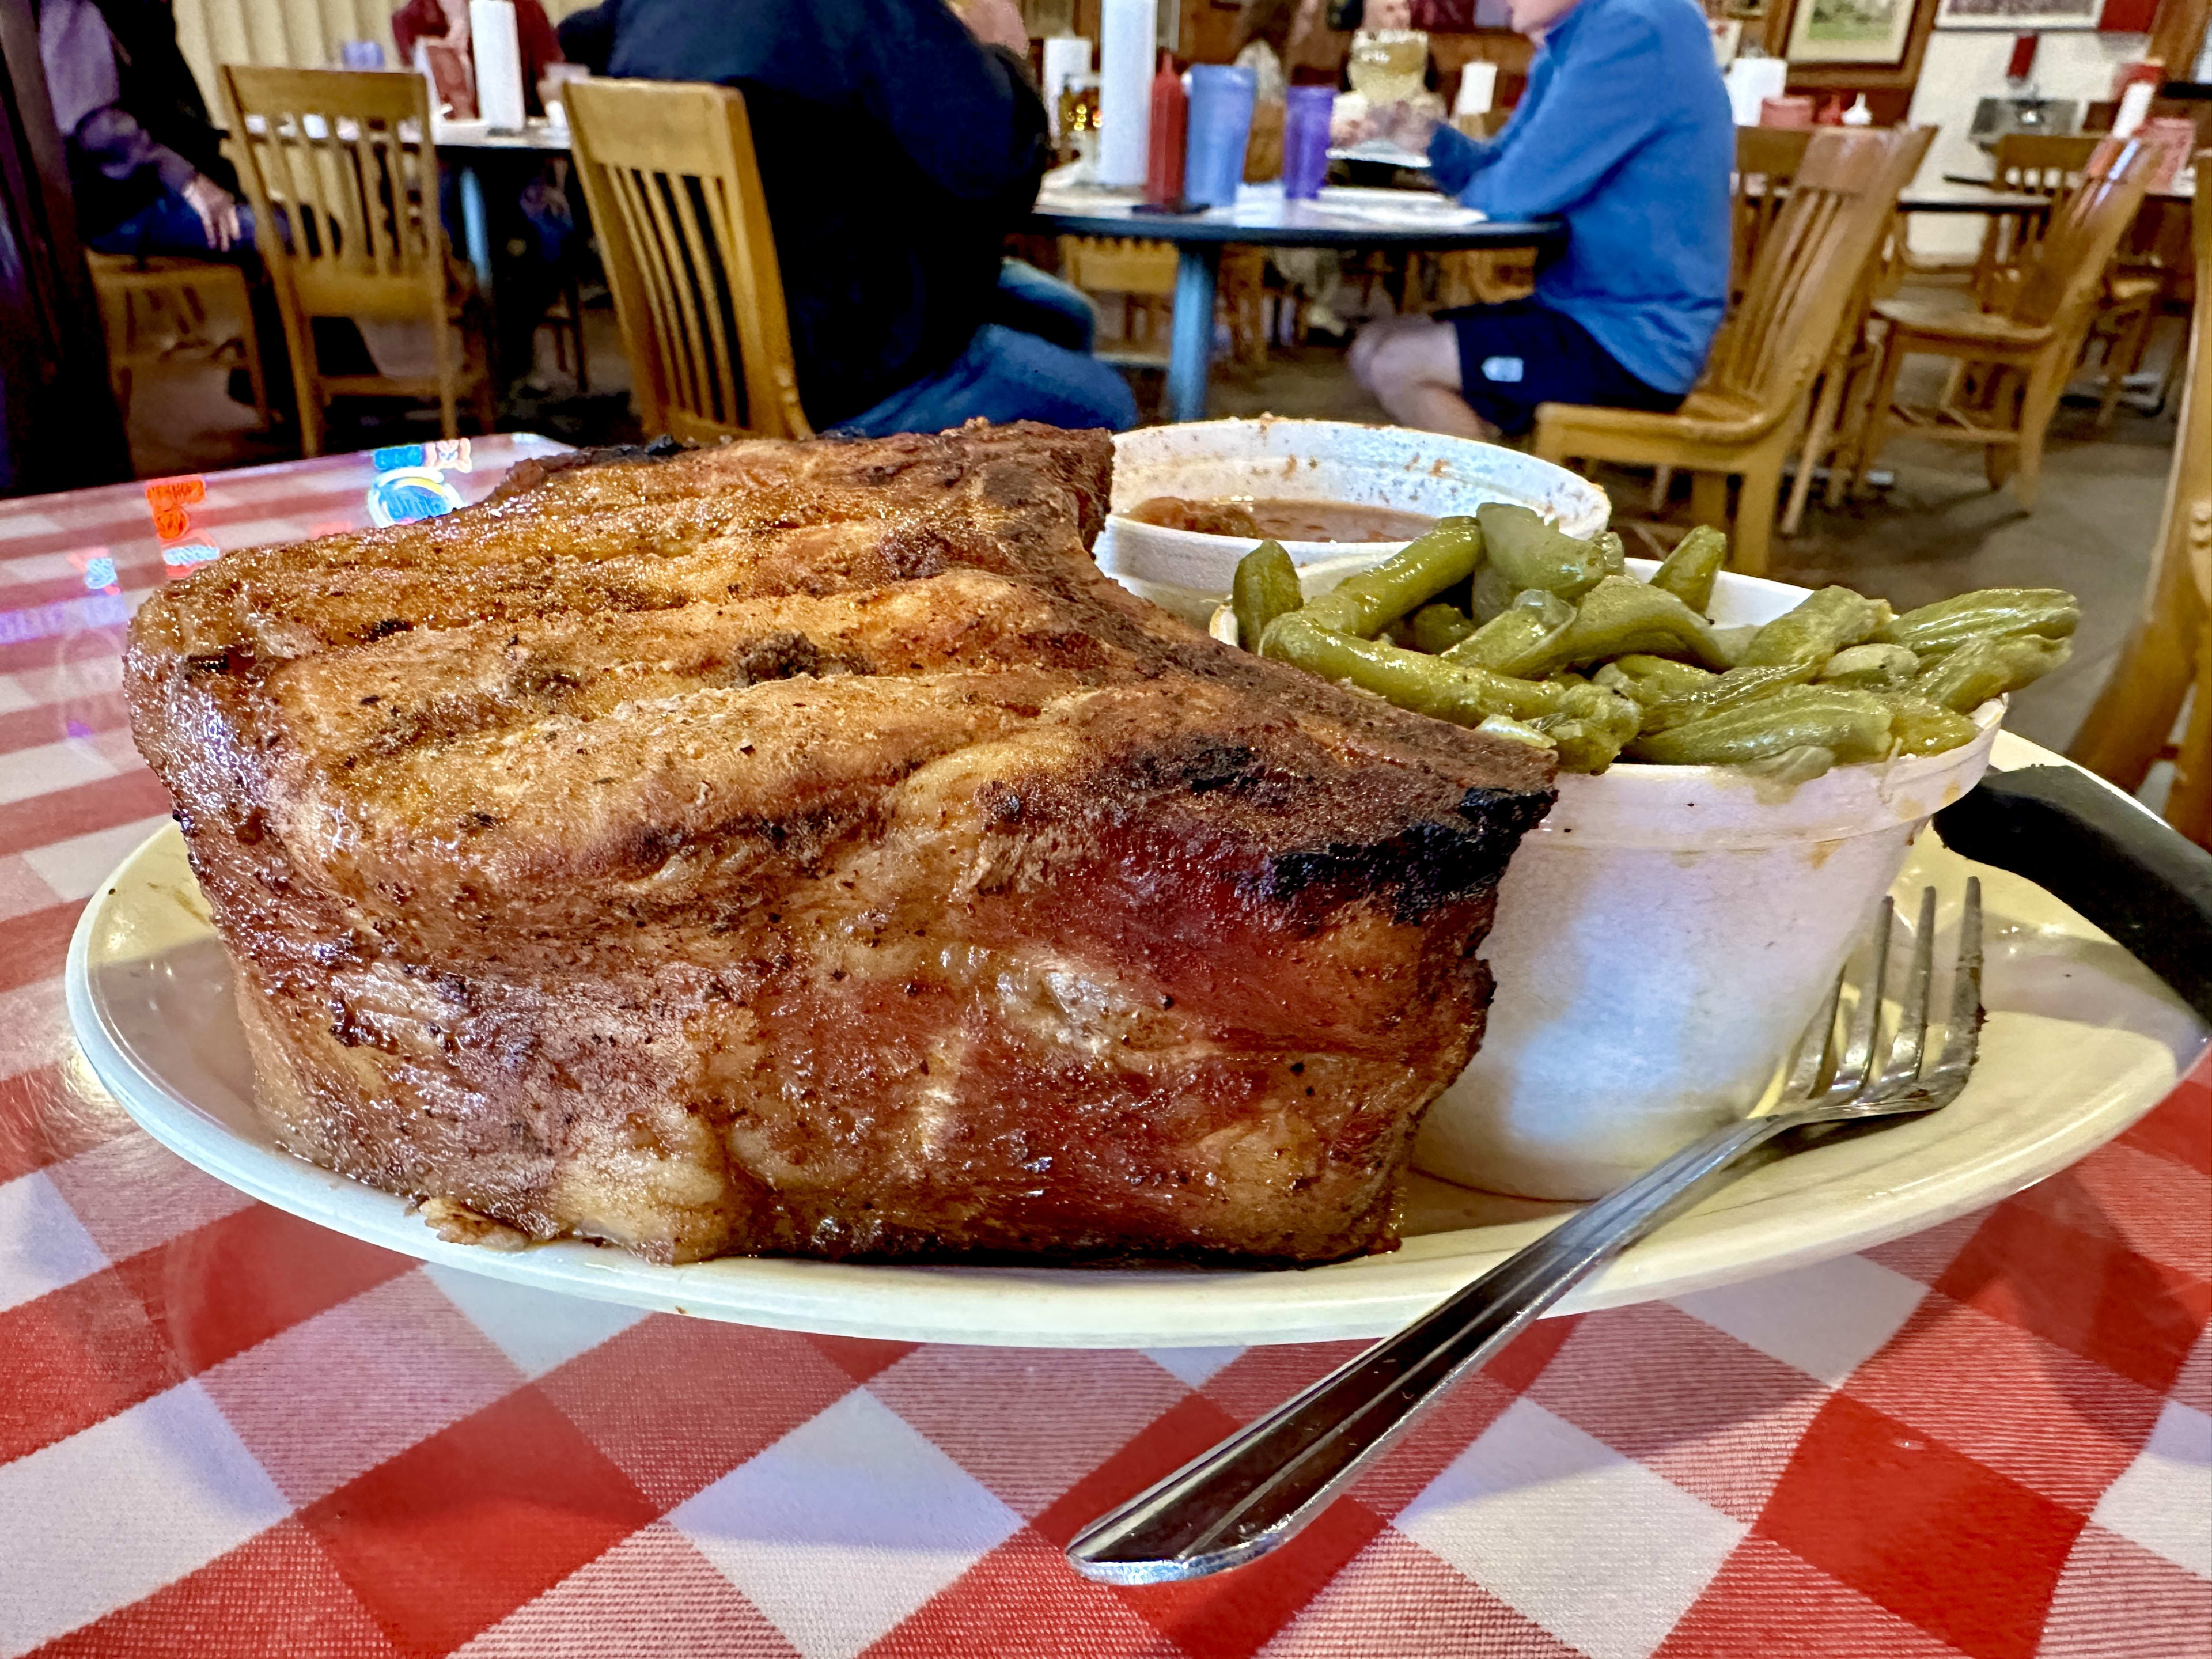 The pork chop at Sammie's